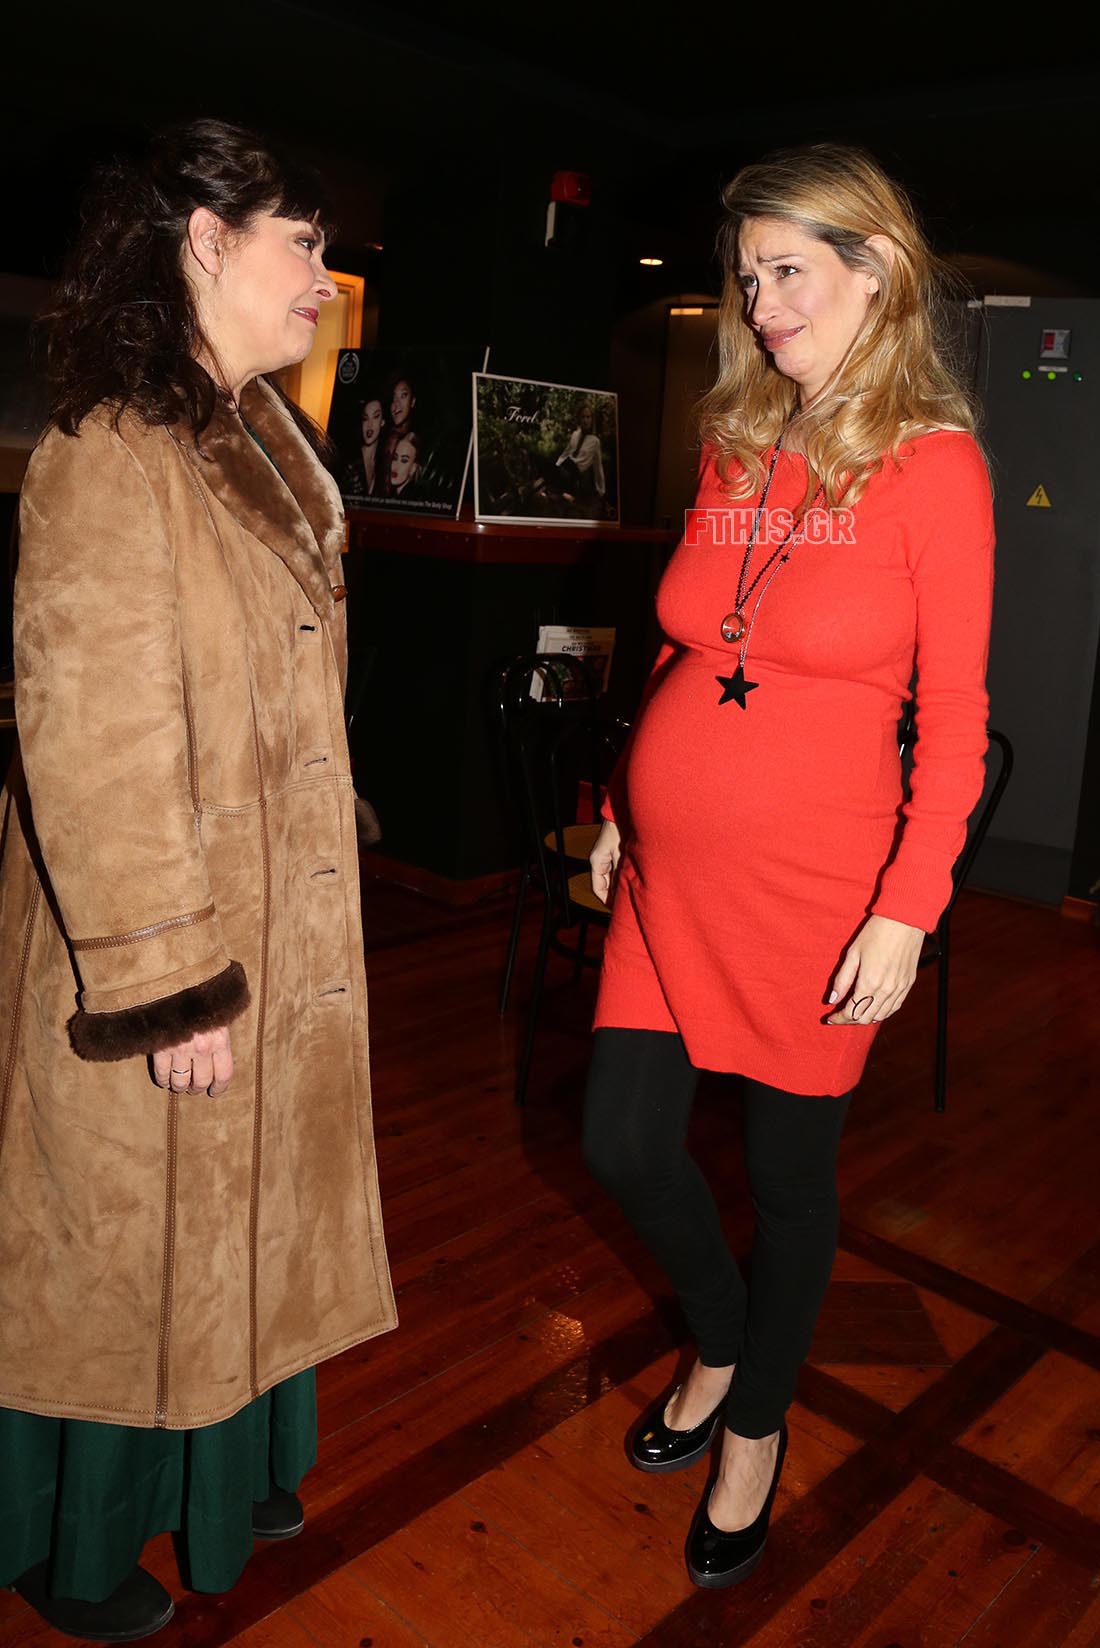 Η Άριελ Κωνσταντινίδη με την Βάνα Πεφάνη στον έβδομο μήνα της εγκυμοσύνης της